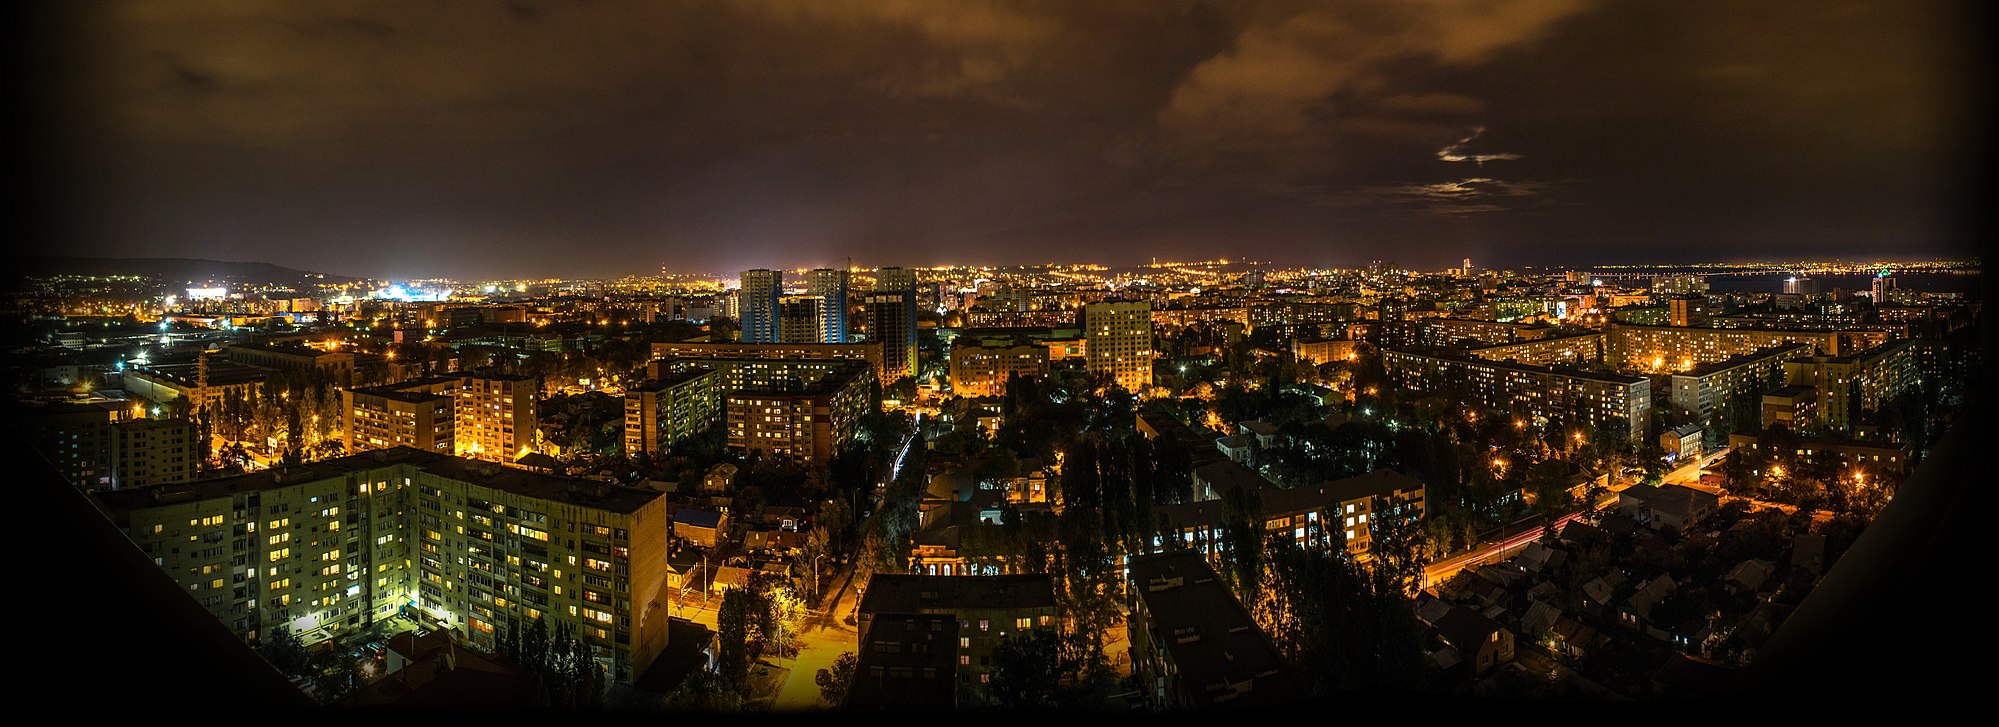 Ночной Саратов панорама